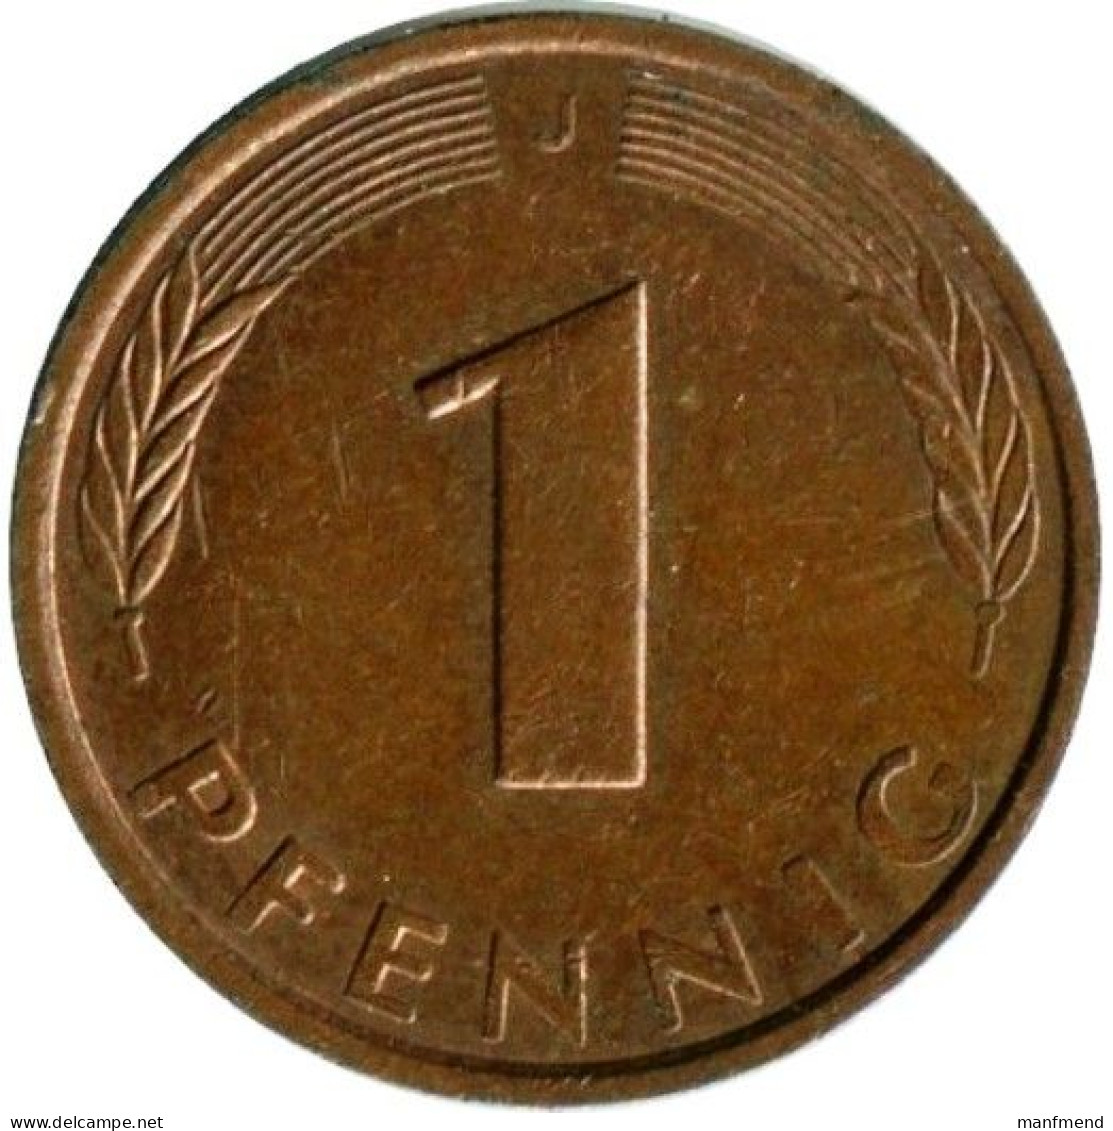 Germany - 1978 - KM 105 - 1 Pfennig - Mintmark "J" / Hamburg - XF - Look Scans - 1 Pfennig